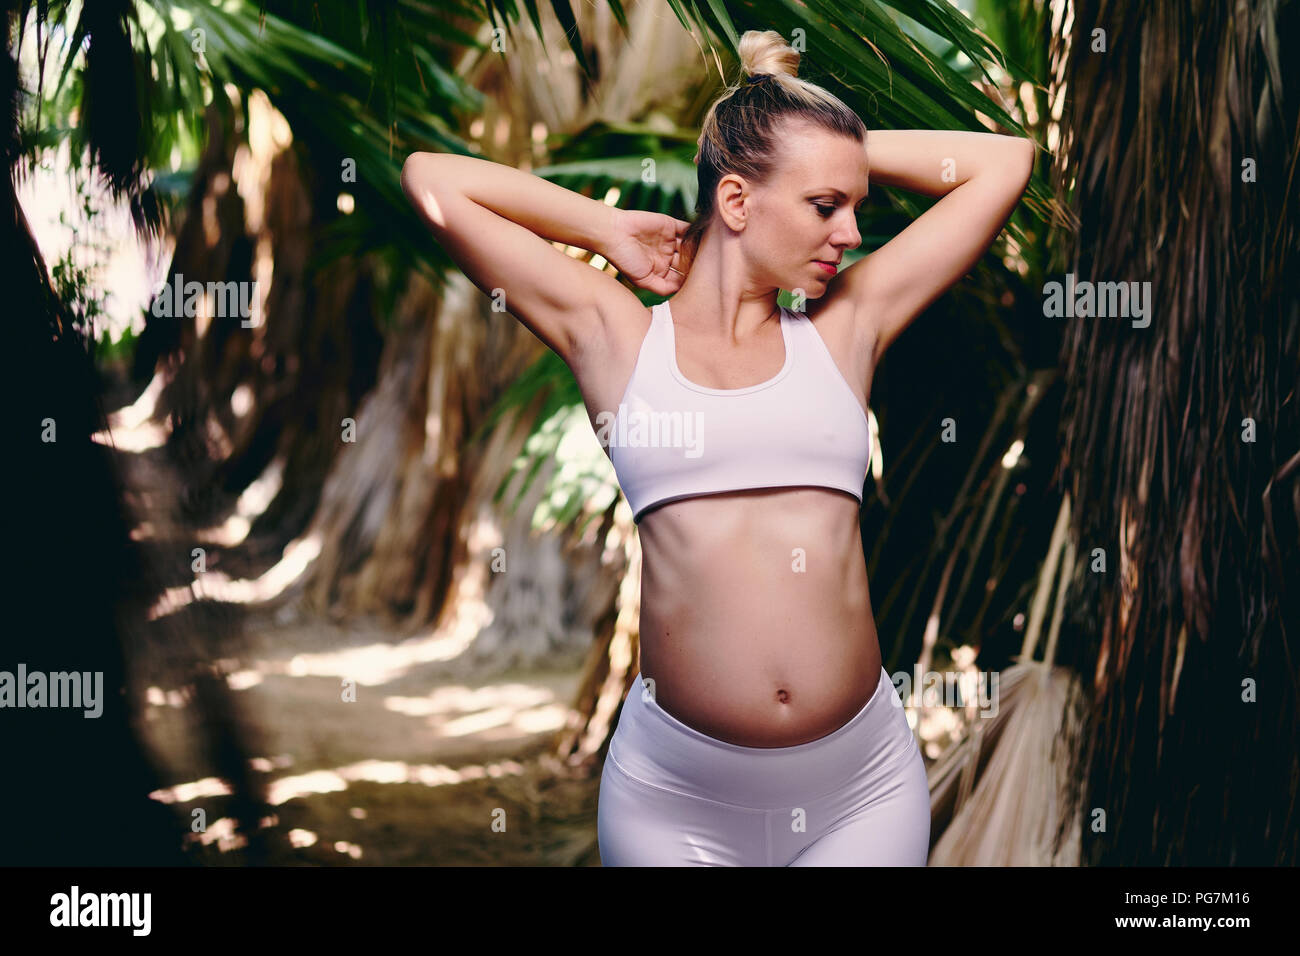 Young attractive blonde woman in white sportswear faisant du yoga pilates exercices de fitness dans la nature tropicale. Avant la naissance de l'exercice, mode de vie sain, rec Banque D'Images